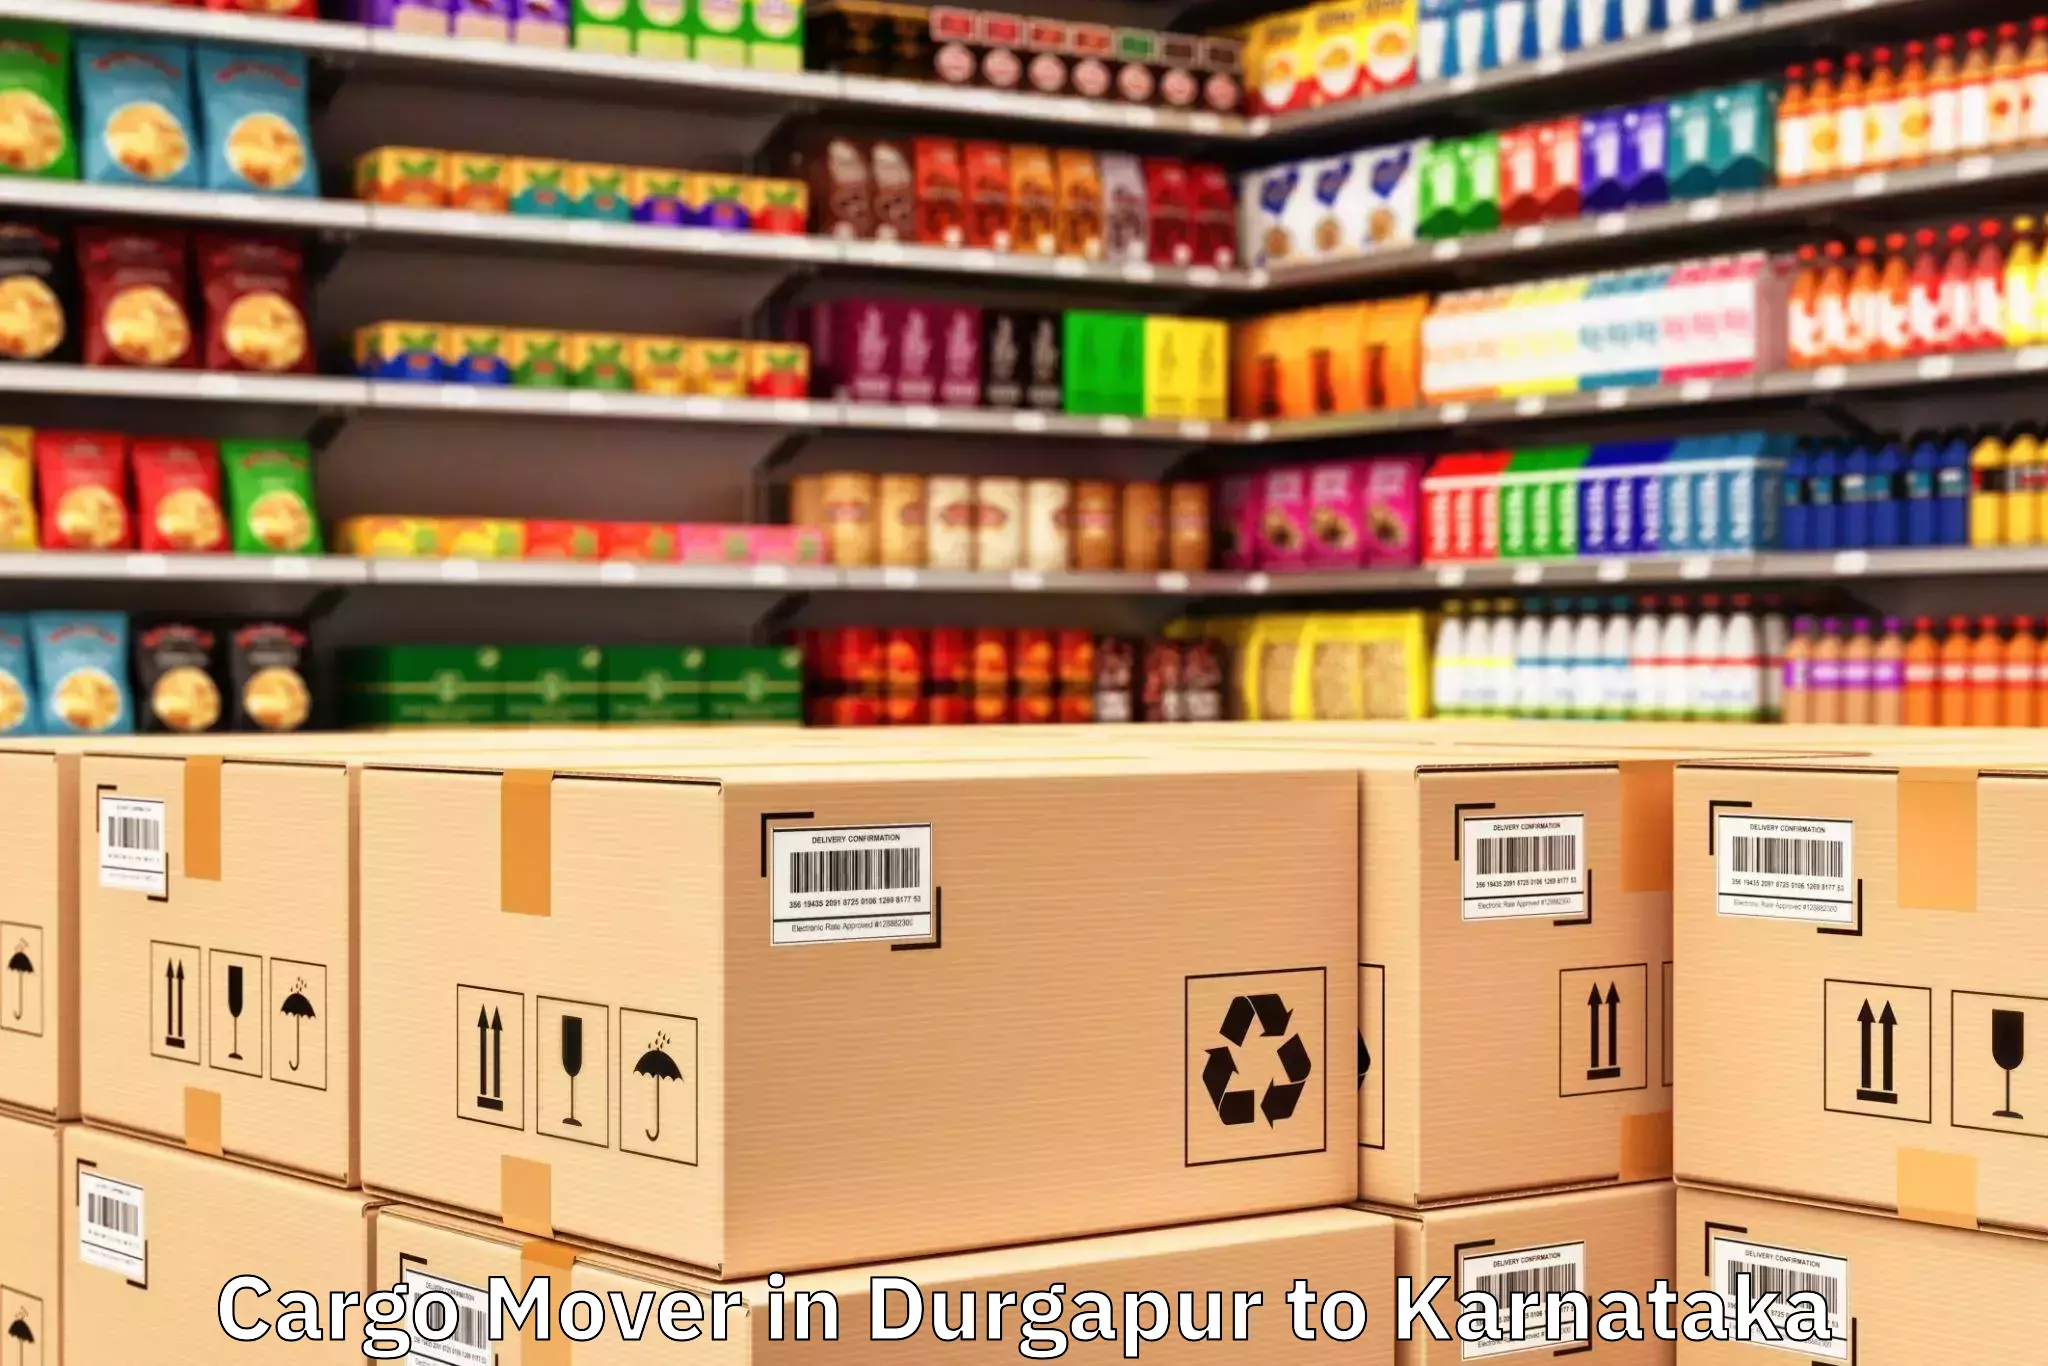 Hassle-Free Durgapur to Nyamathi Cargo Mover